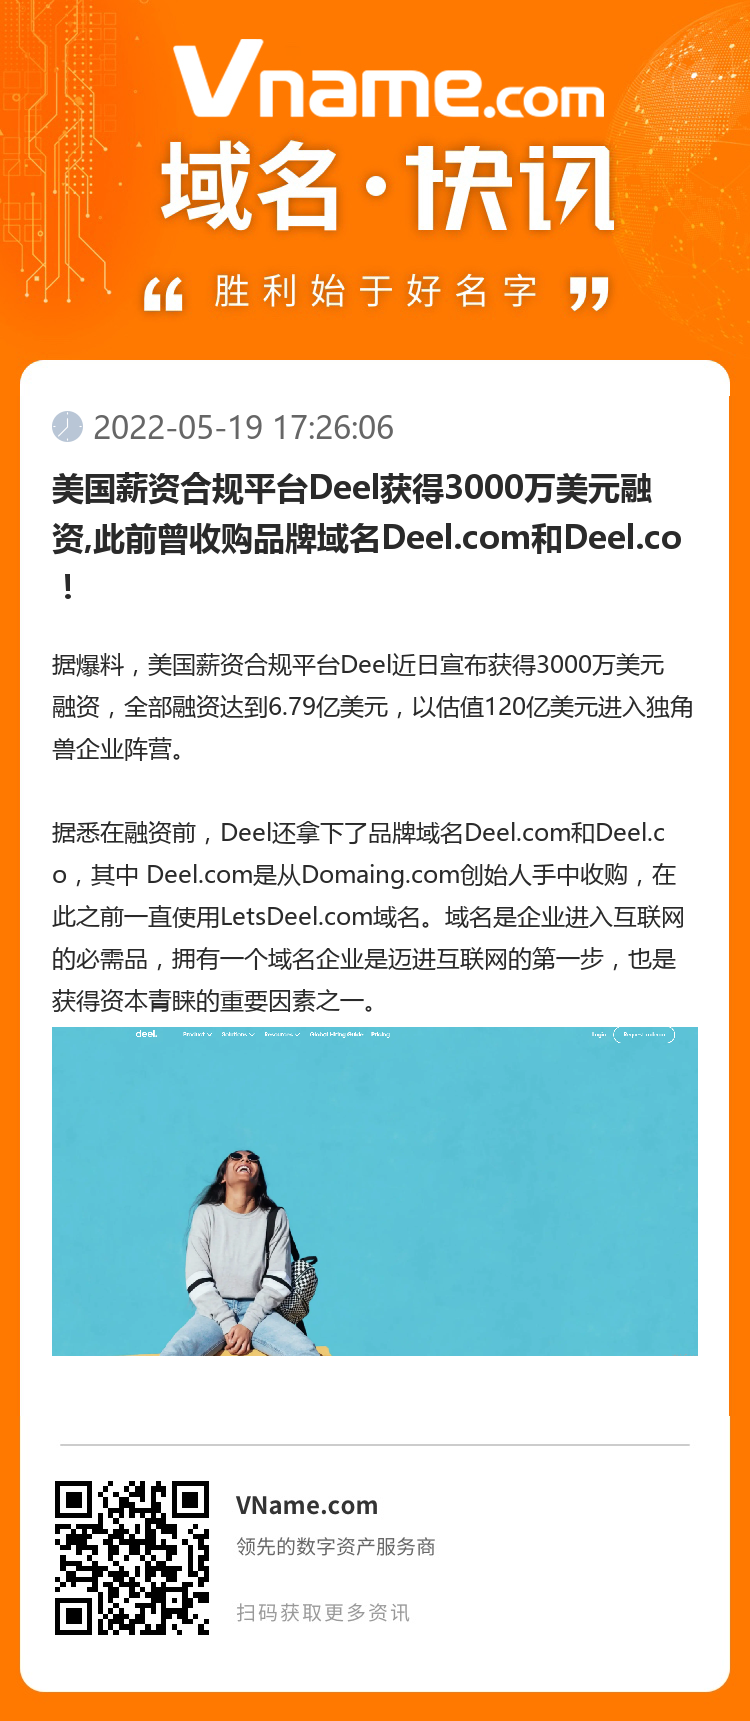 美国薪资合规平台Deel获得3000万美元融资,此前曾收购品牌域名Deel.com和Deel.co！